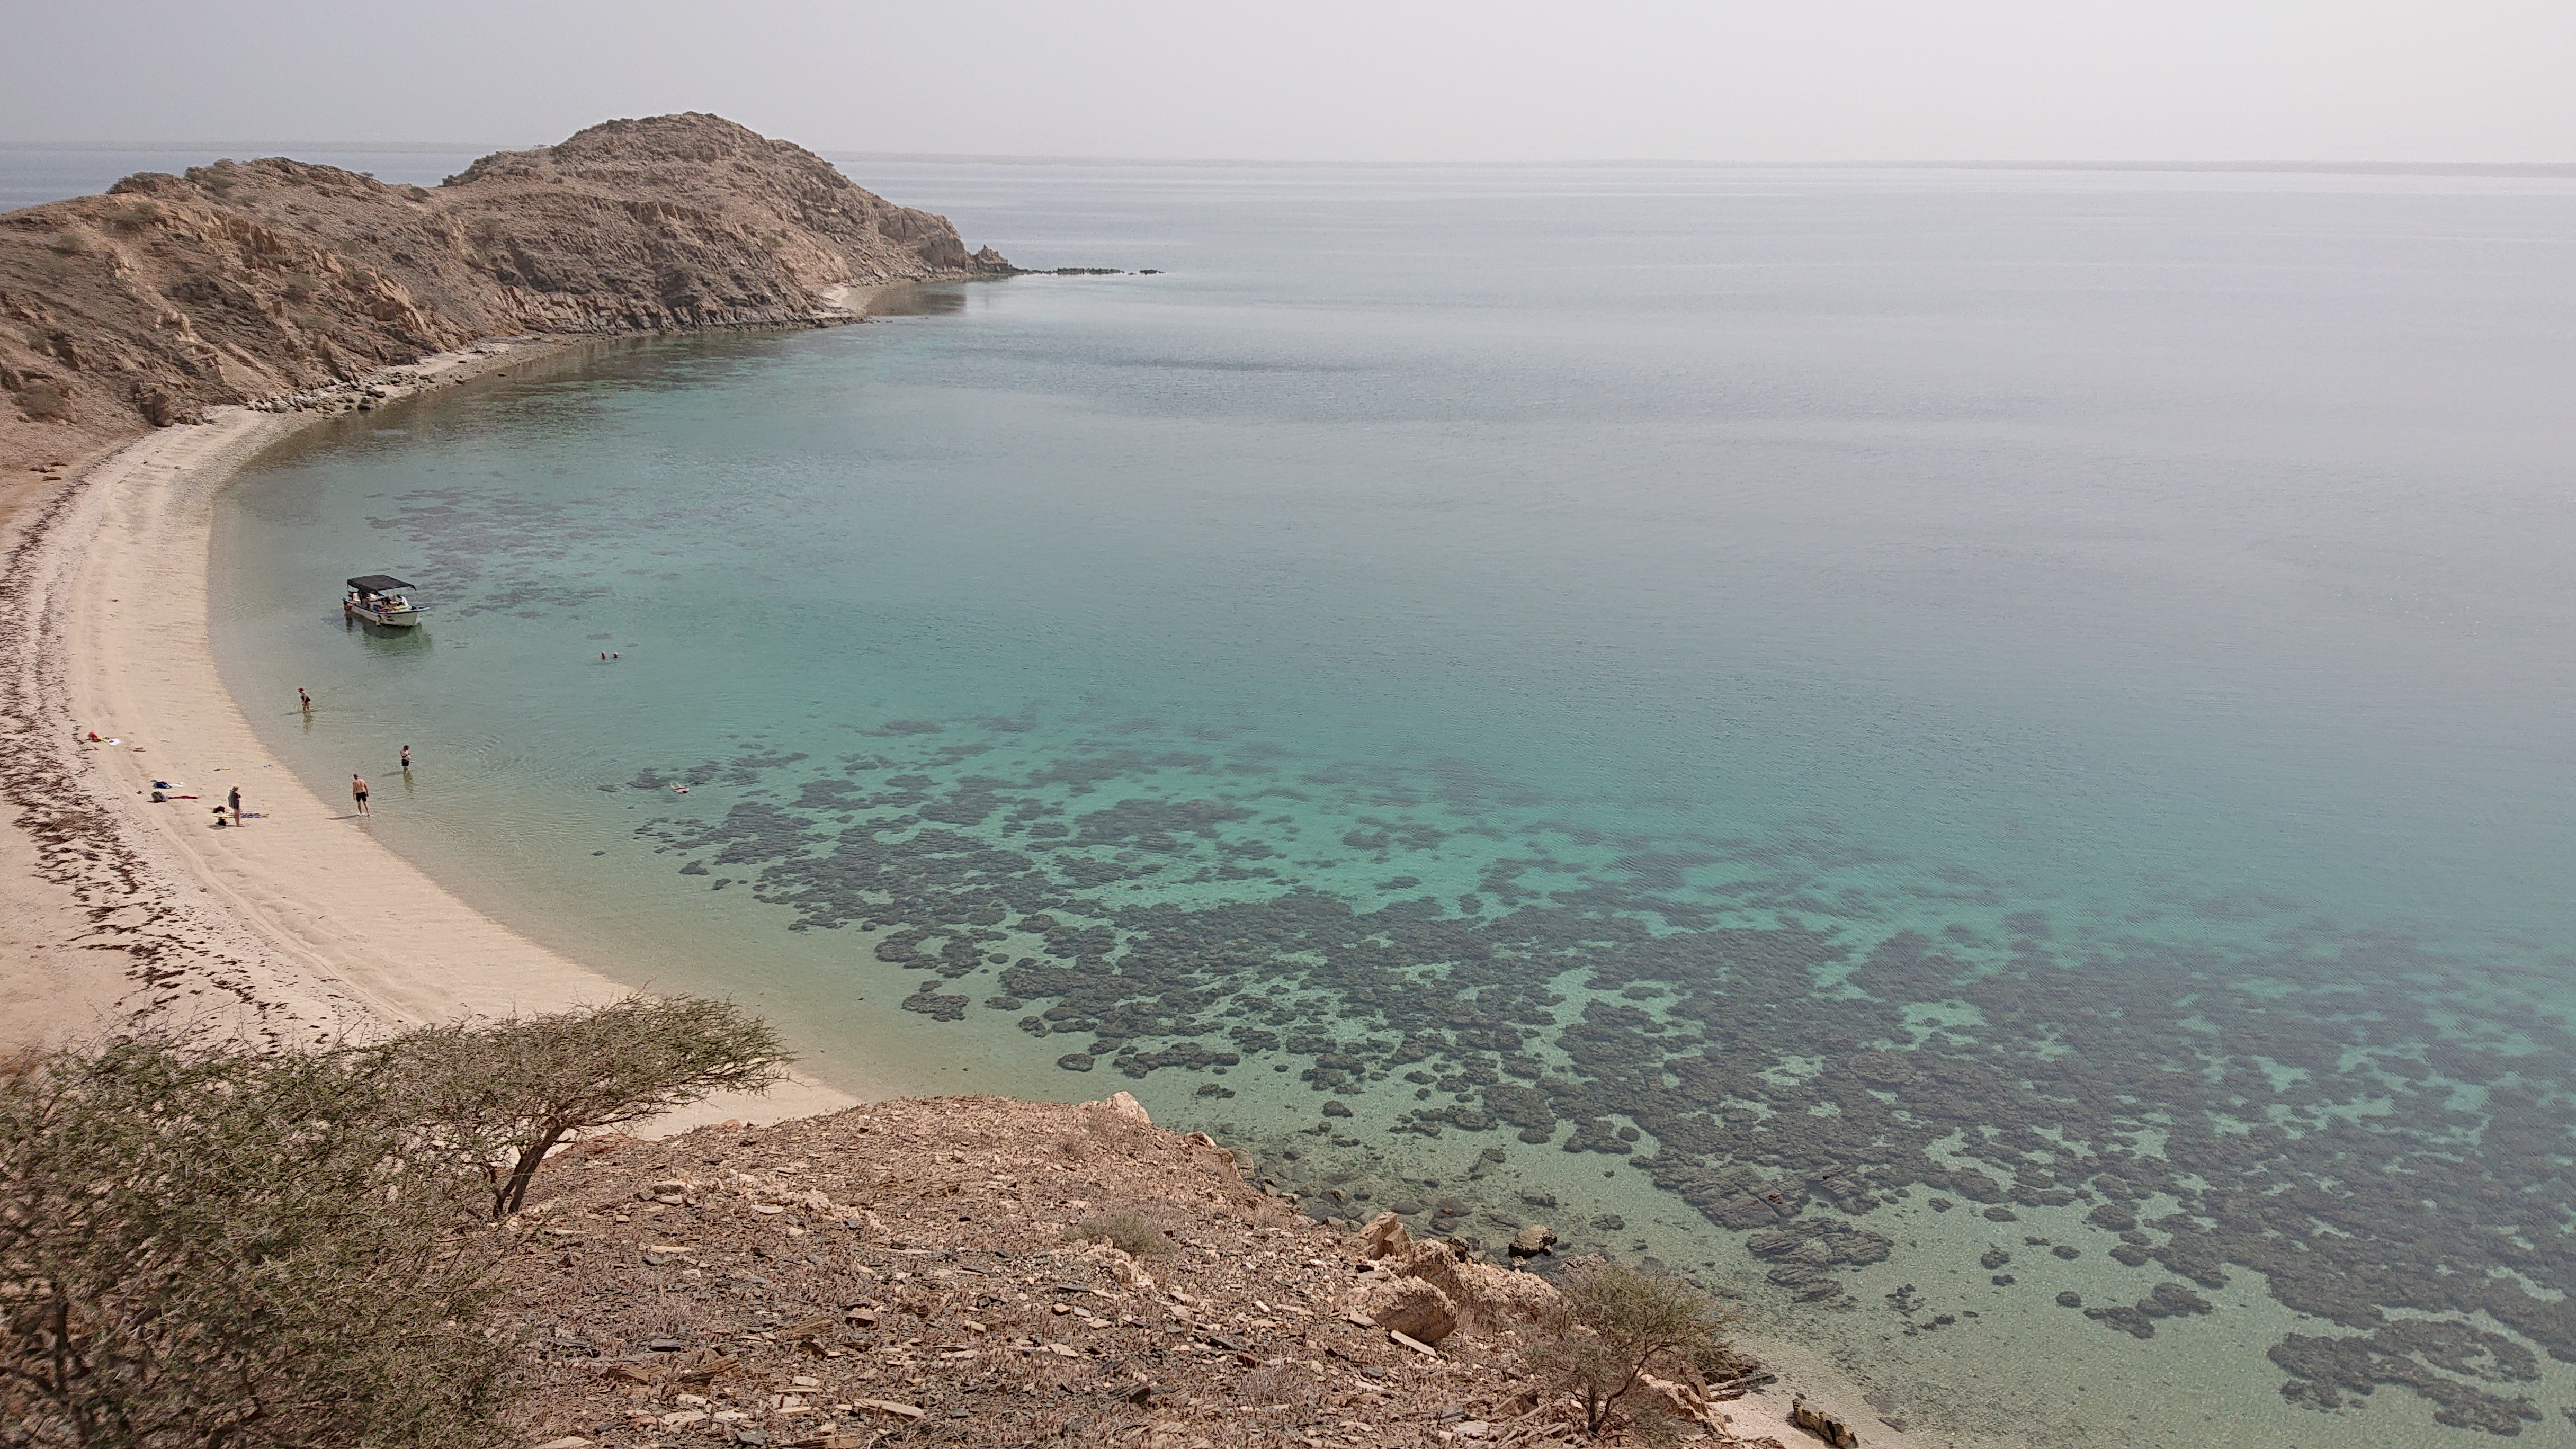 Eritrea – cestovateľské rady, tipy a itinerár 